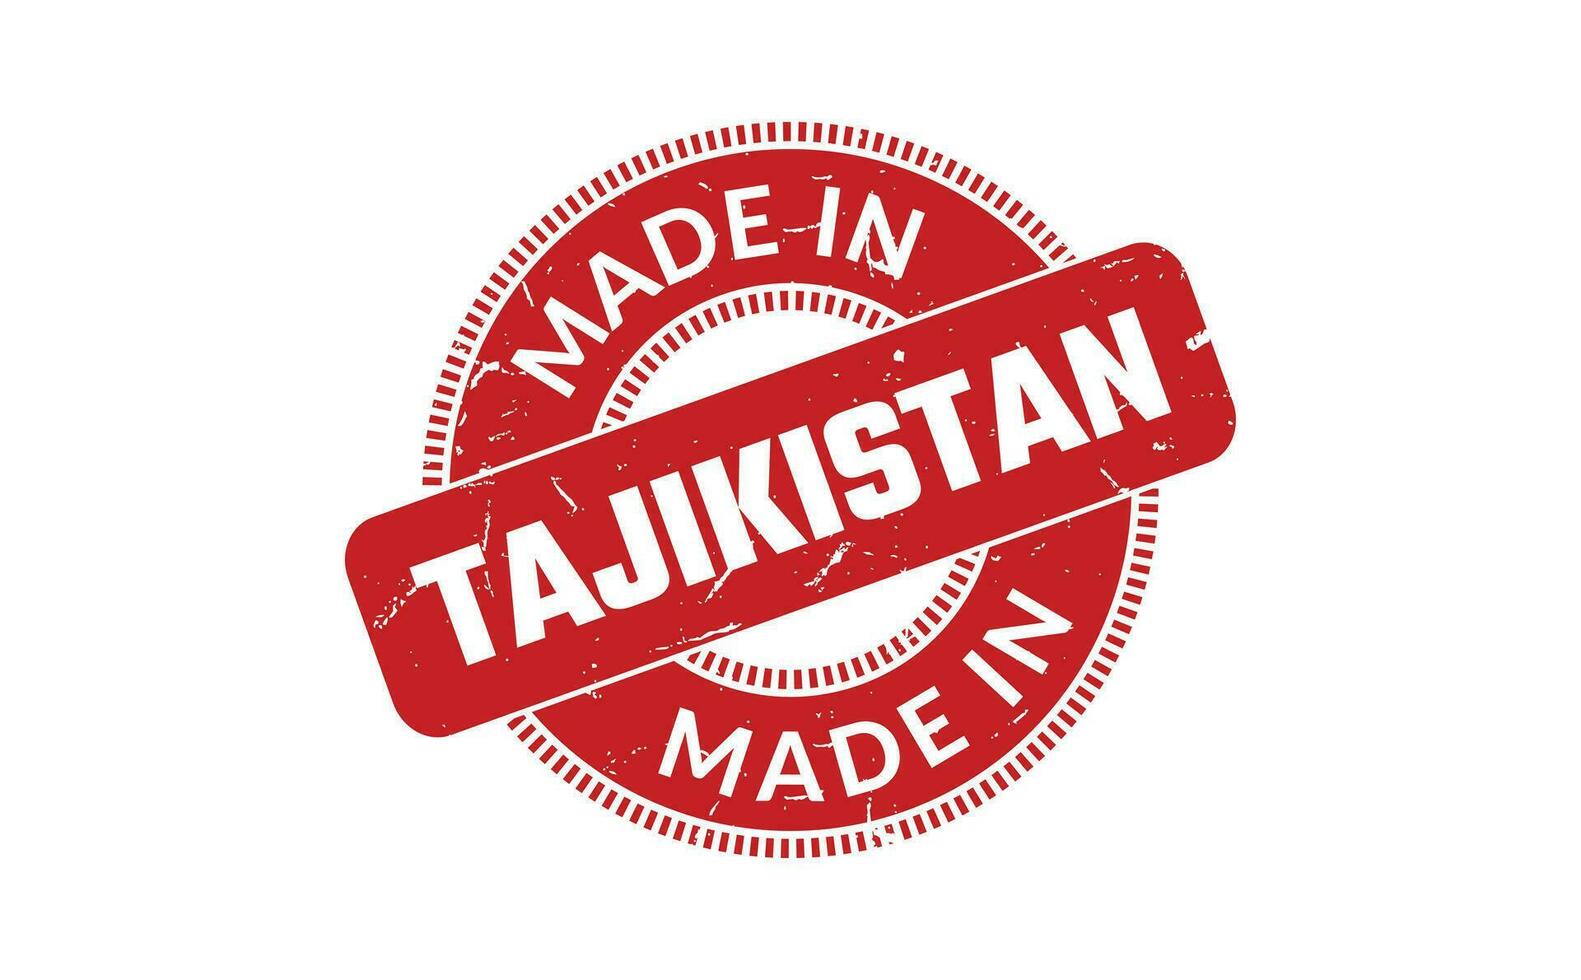 gemaakt in Tadzjikistan rubber postzegel vector